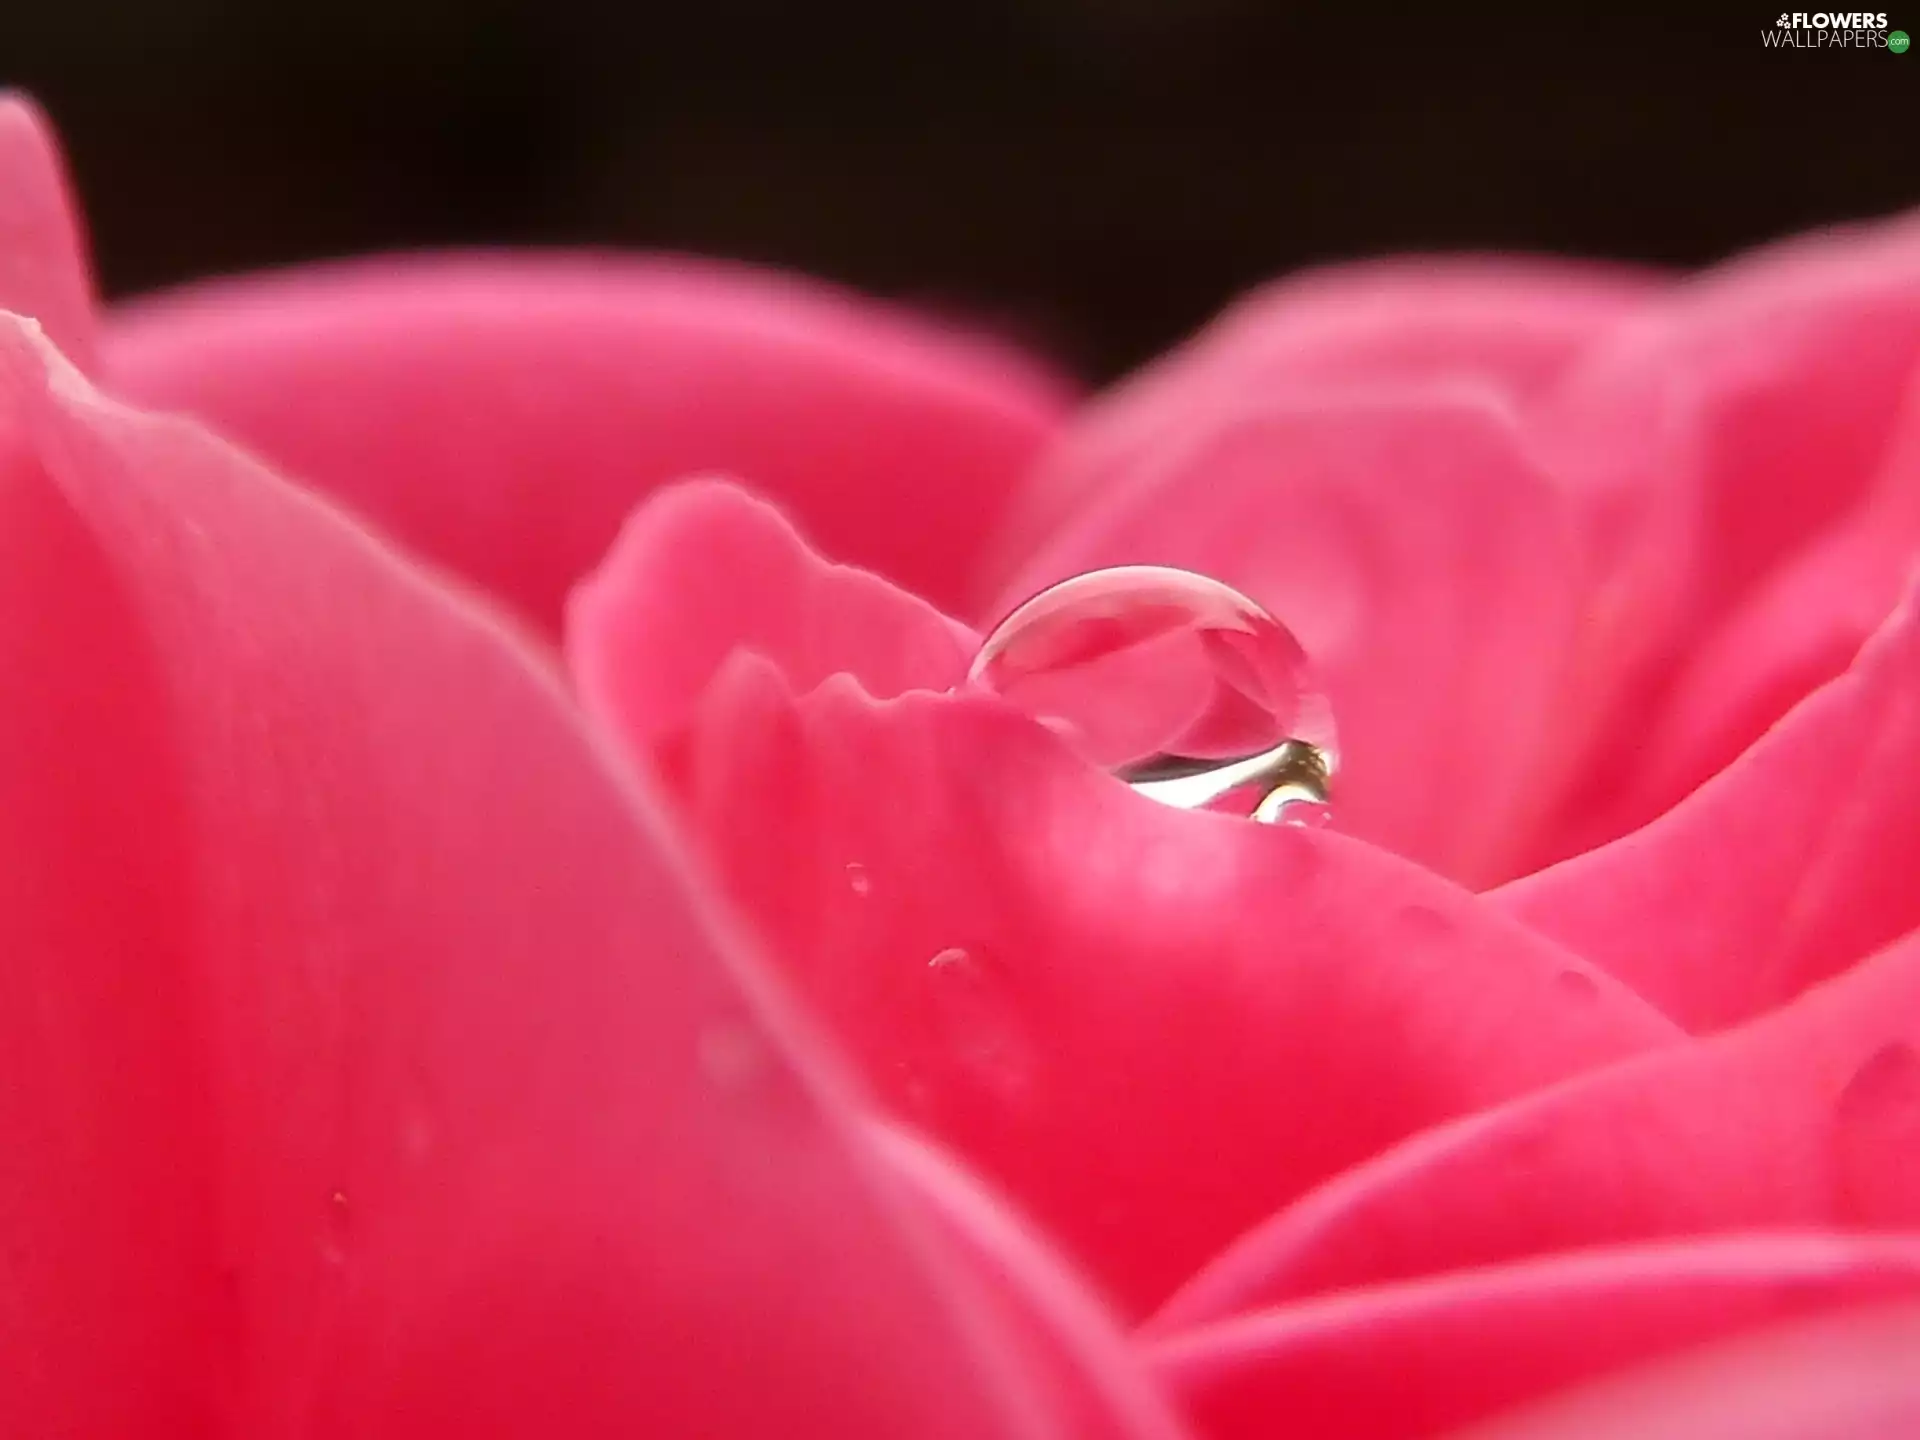 Pink, drop, water, rose